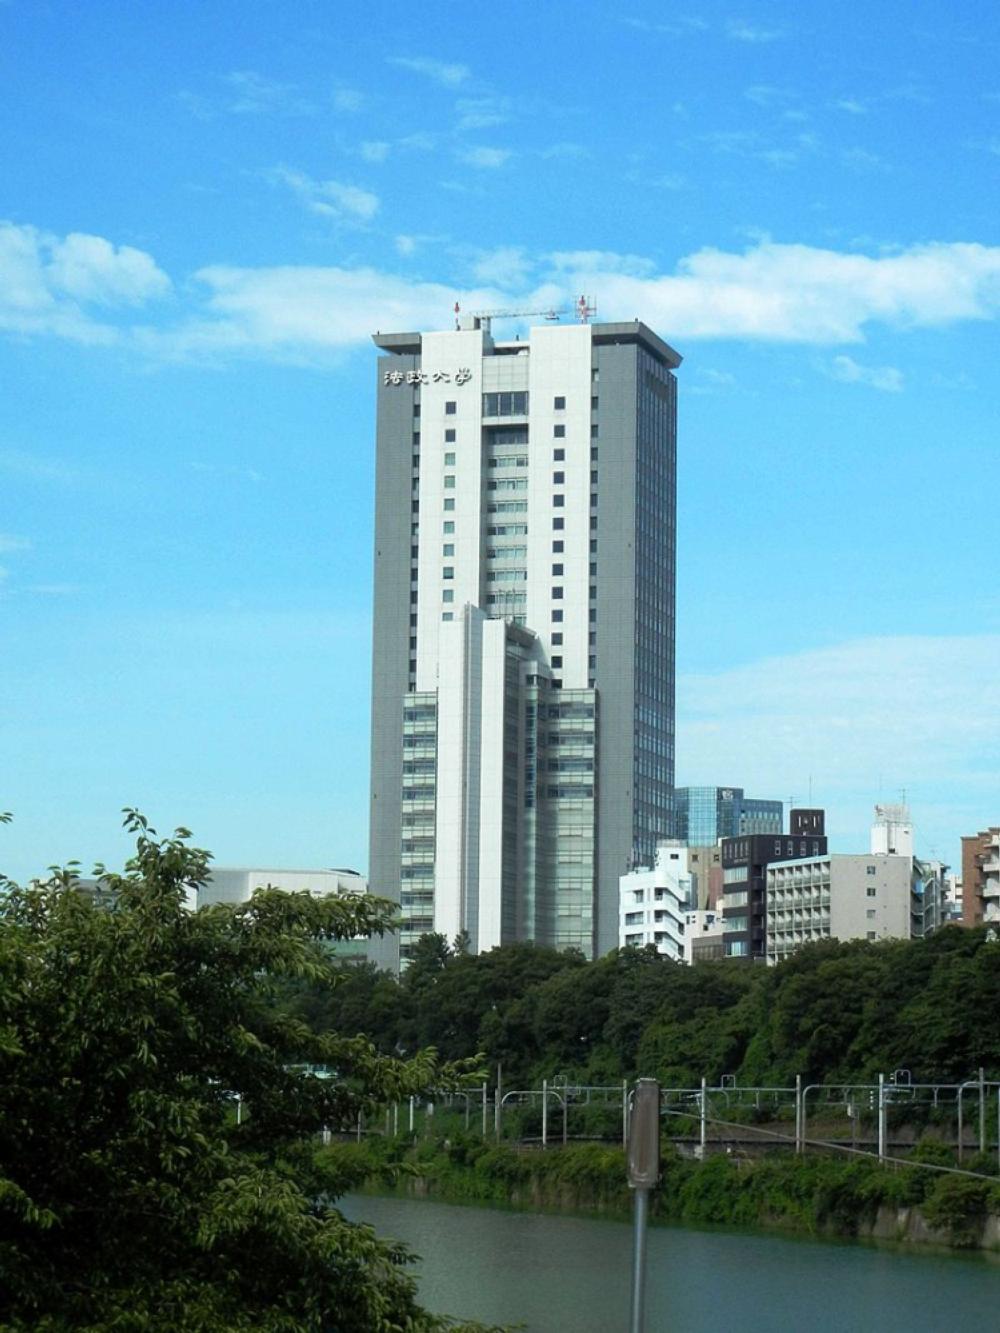 Hosei Tower